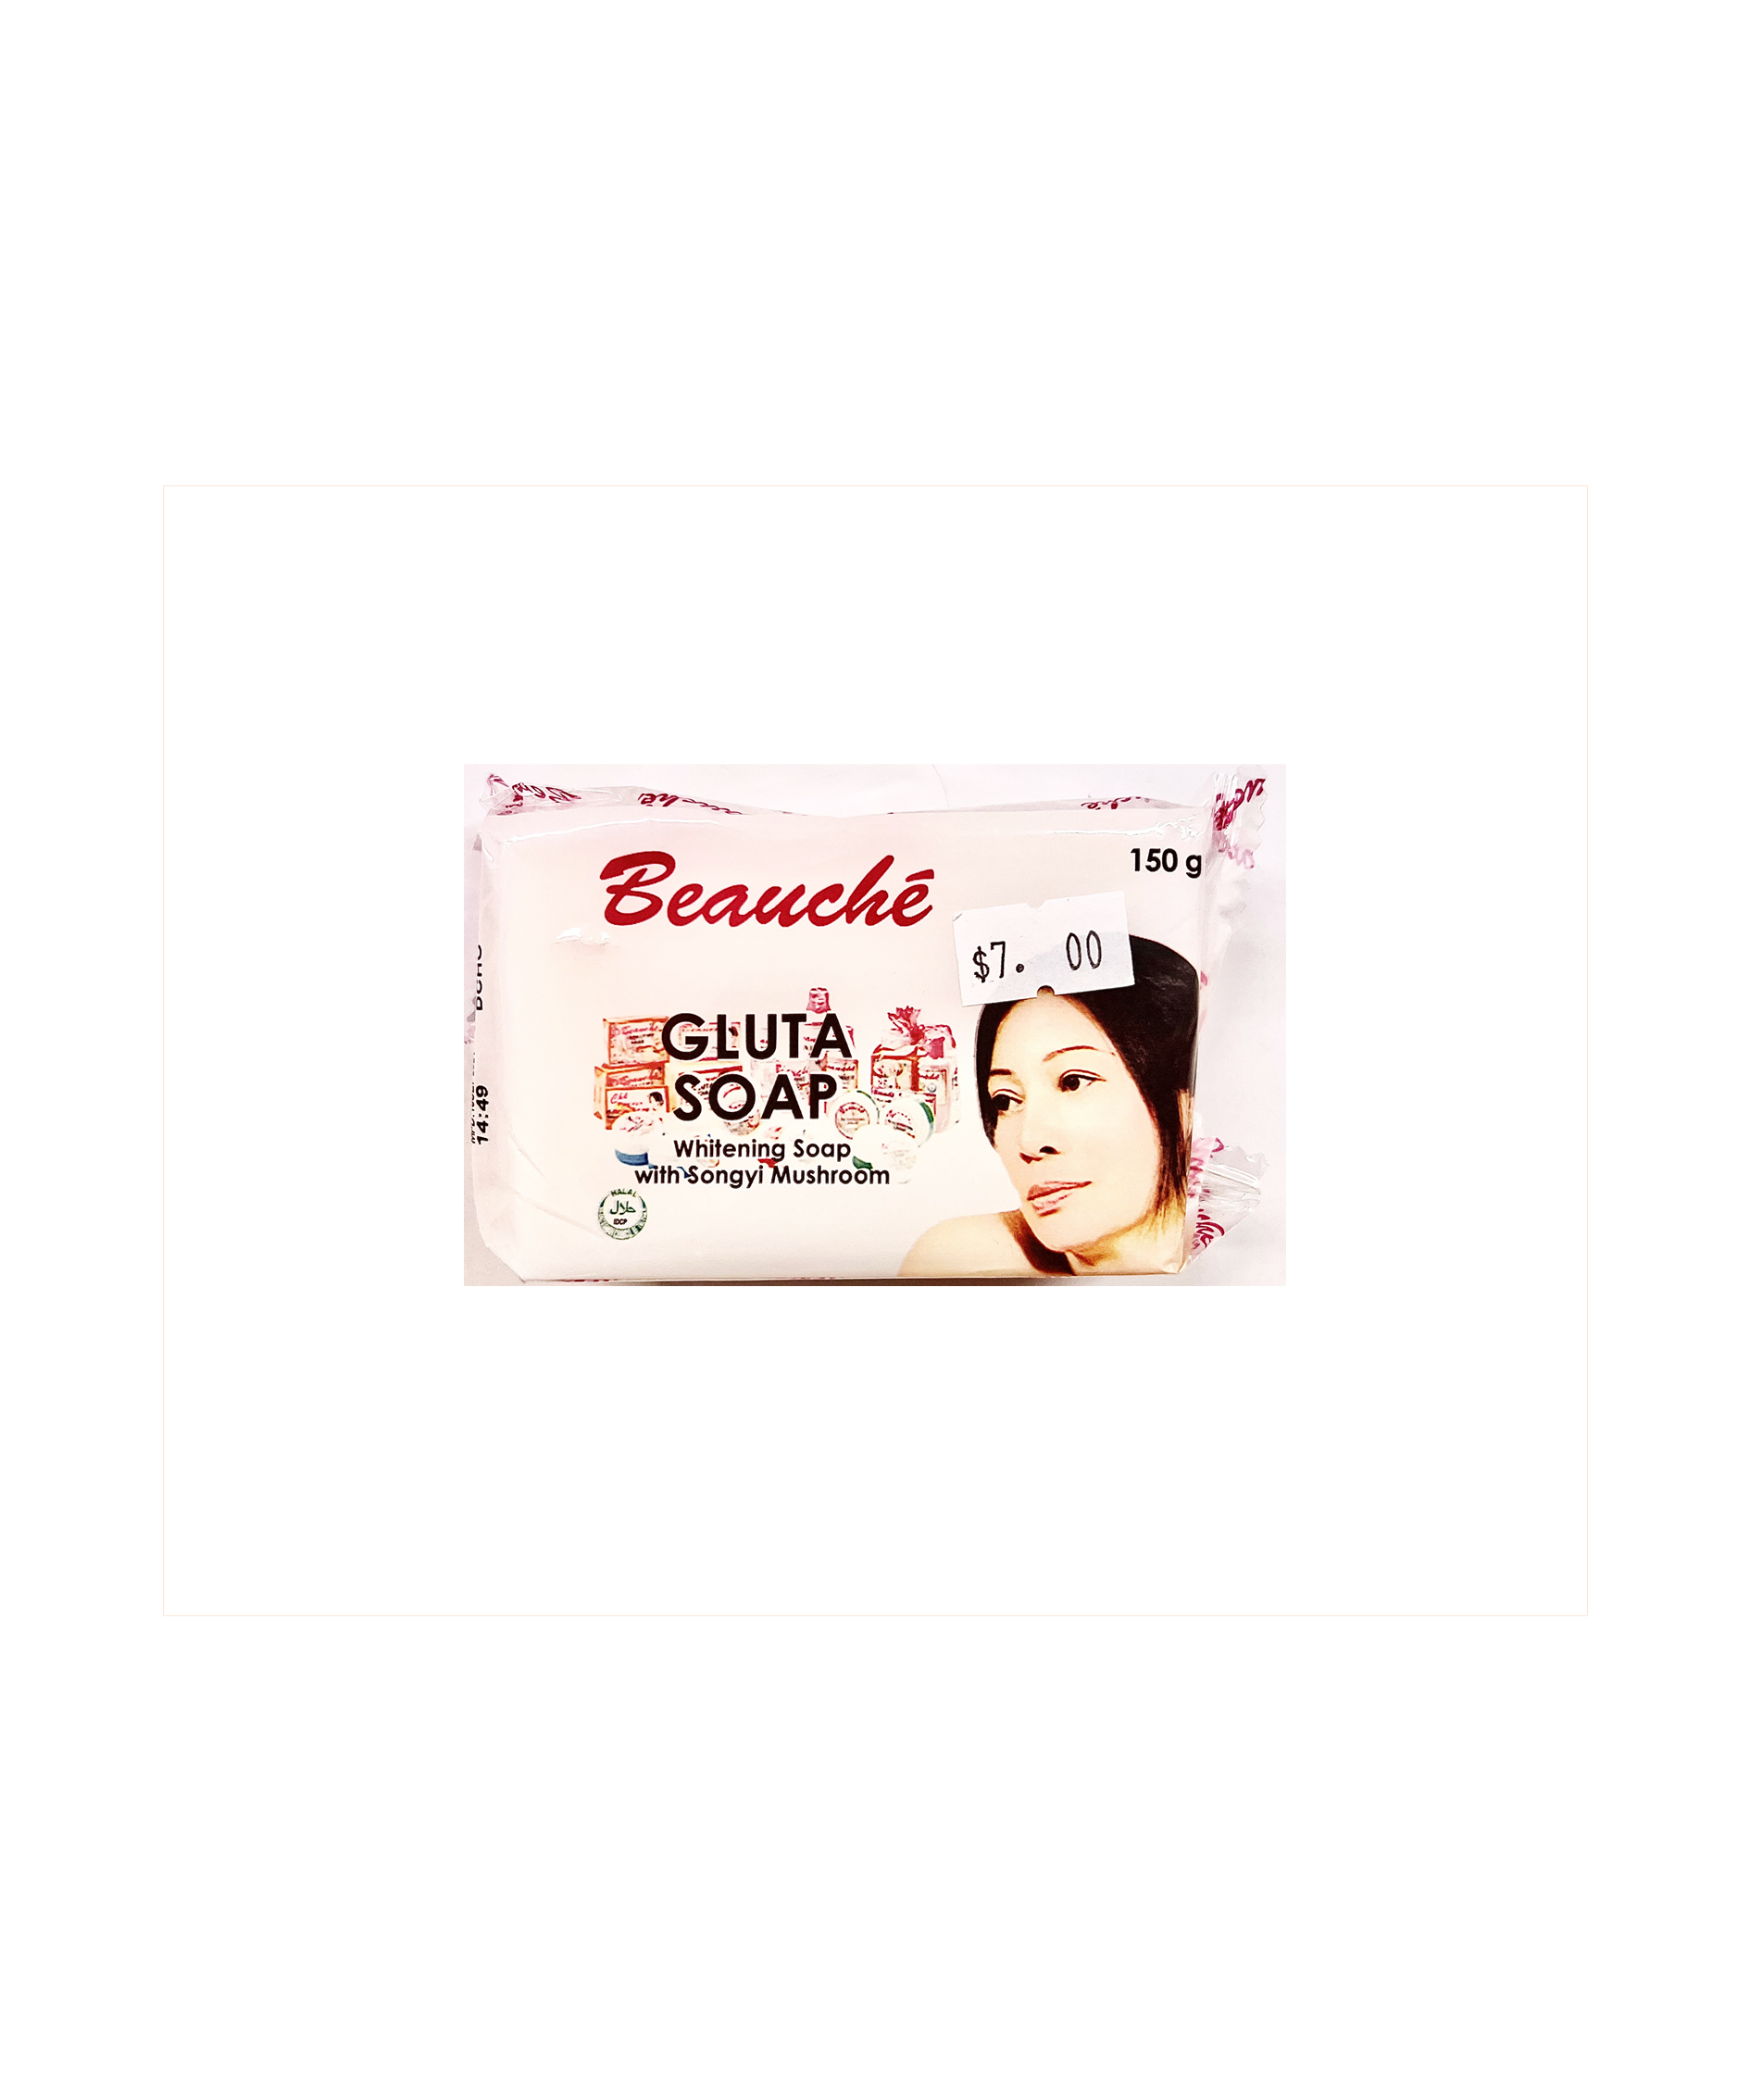 Beauche Gluta Bar Soap 150g